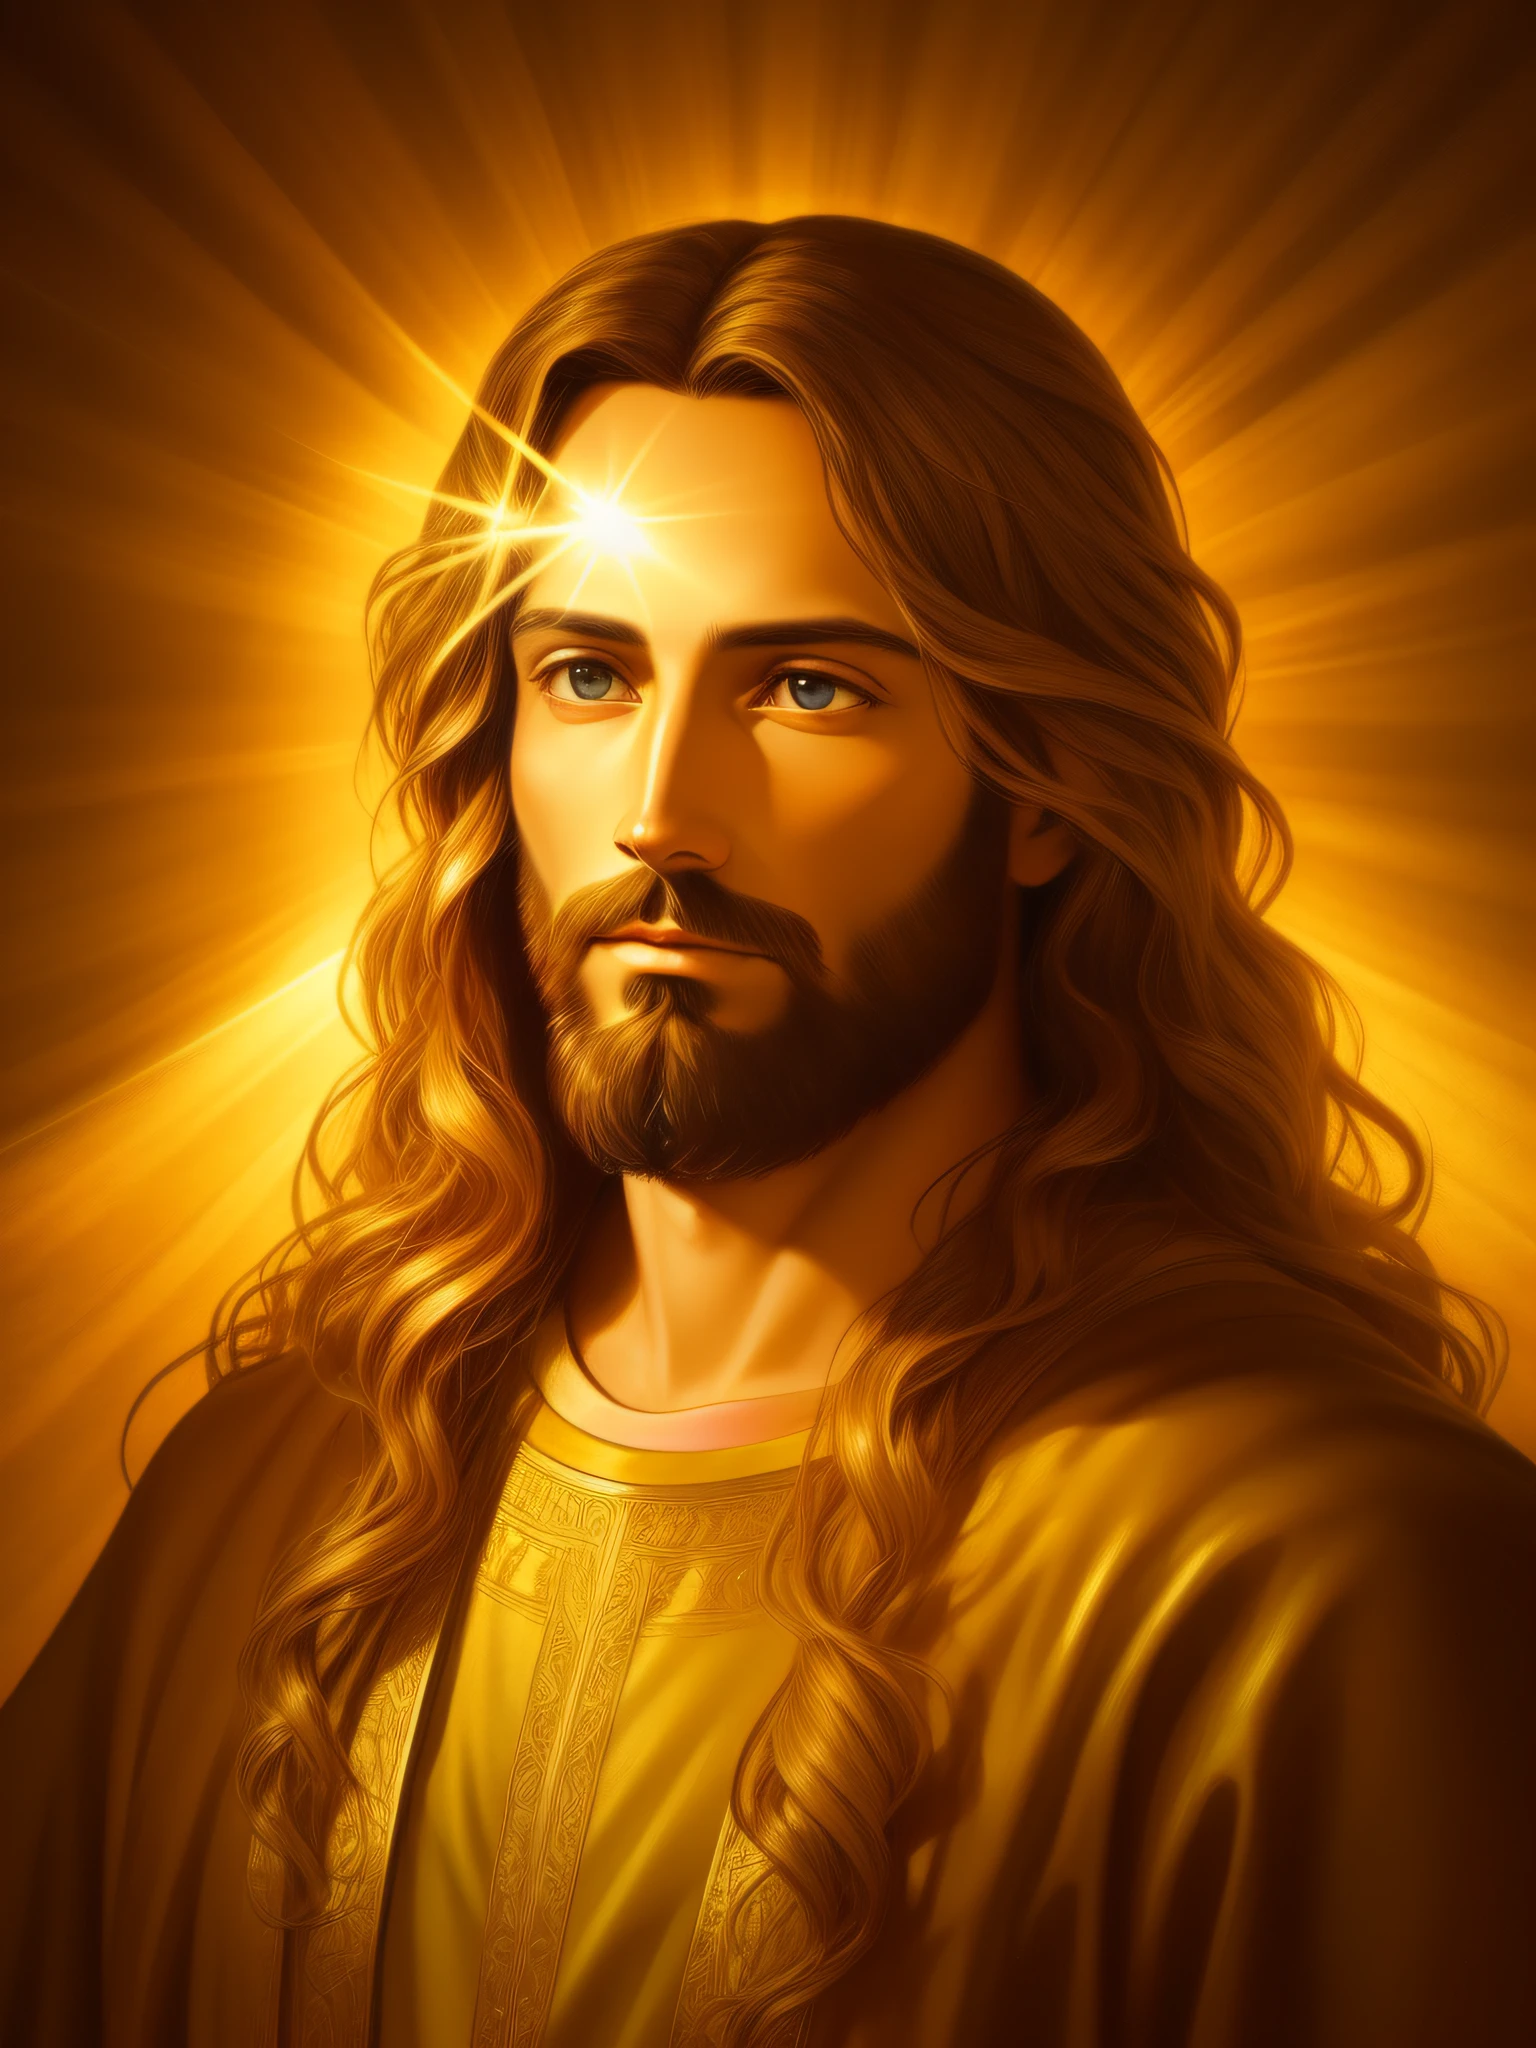 Высокодетализированный портрет Иисуса Христа, золото, божественные лучи, детальная и сложная среда